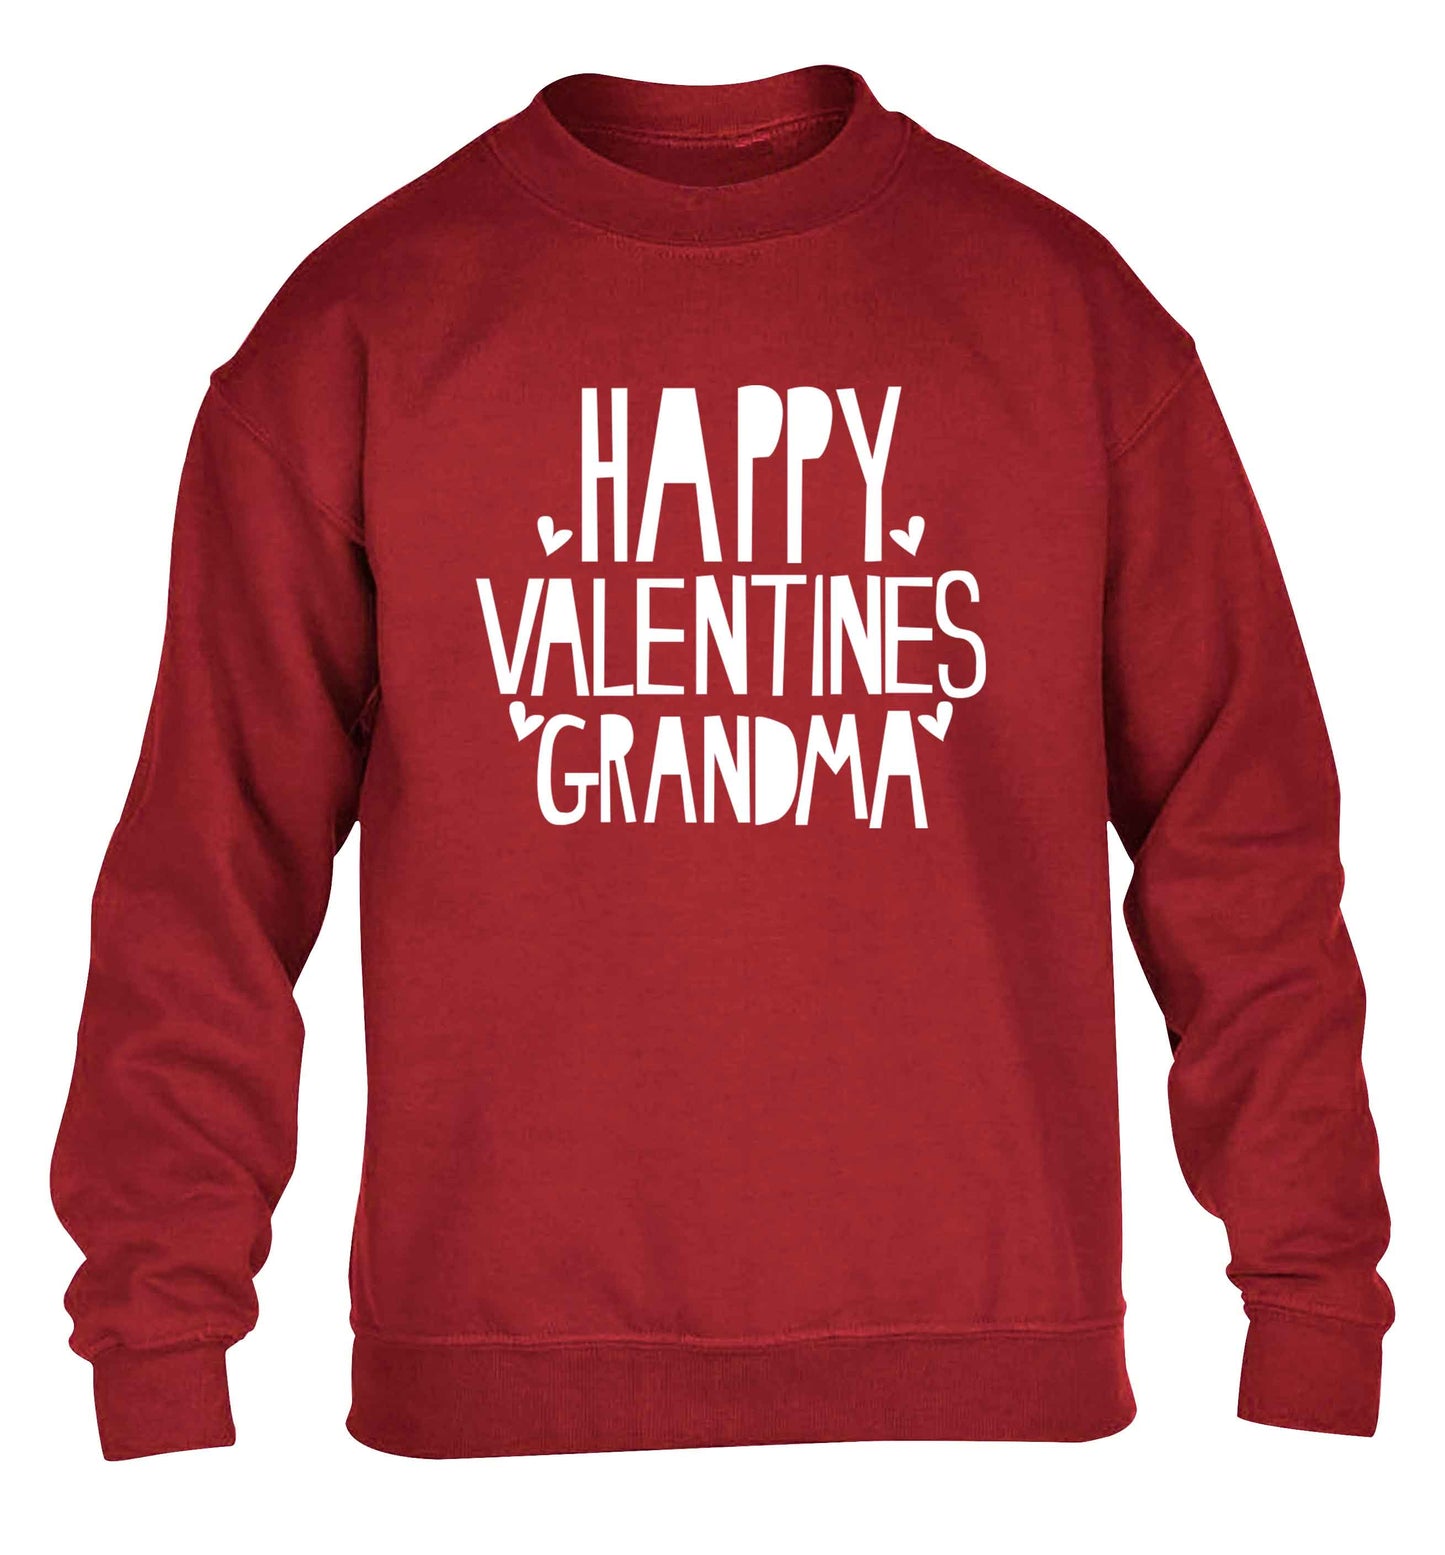 Happy valentines grandma children's grey sweater 12-13 Years